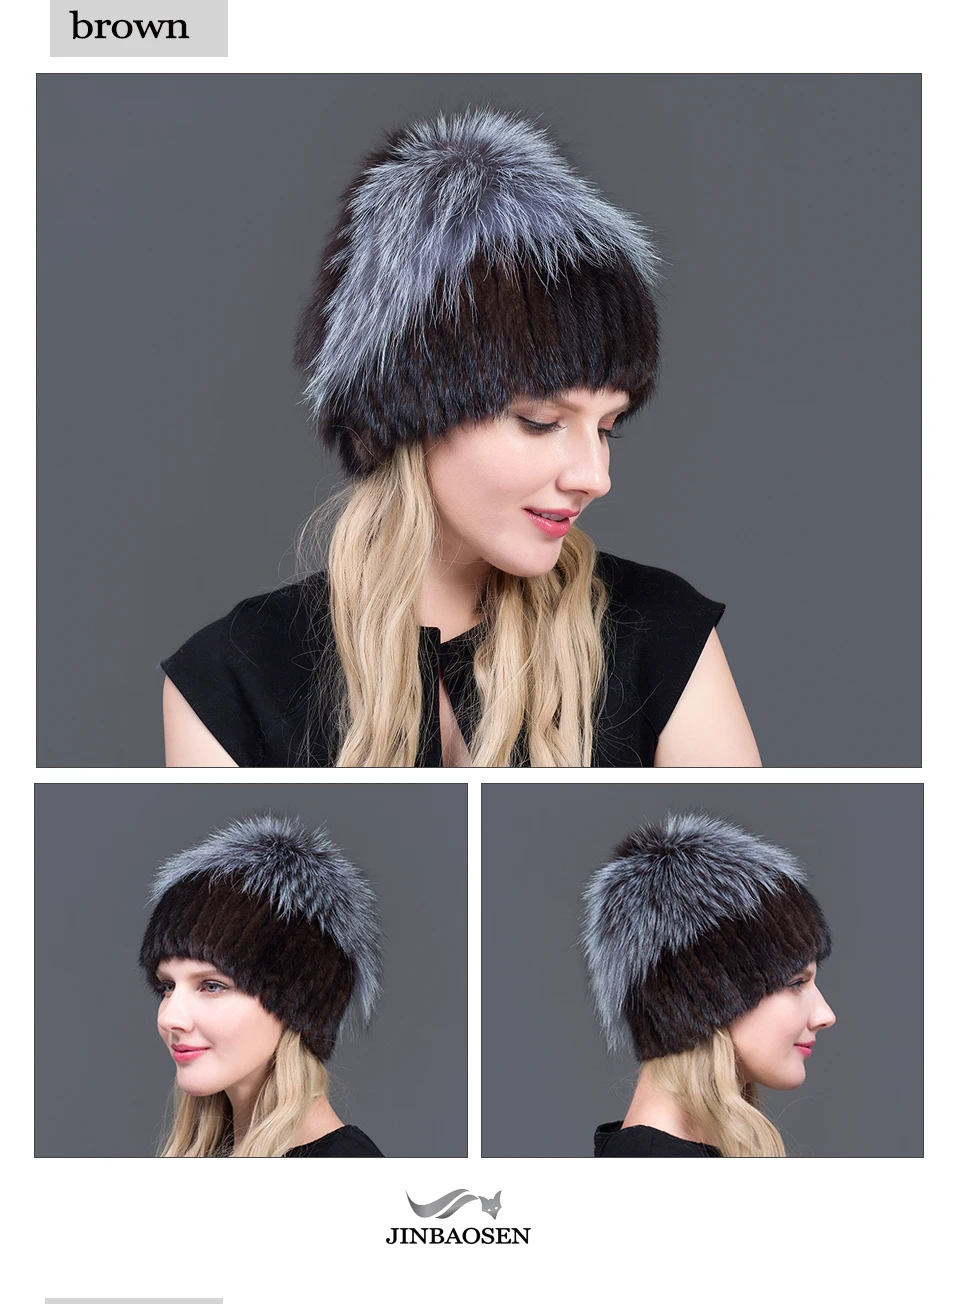 JINBAOSEN/Новые модные зимние шляпы для женщин, шапка из натурального меха норки, Женская Лоскутная шапка из лисьего меха, смешанные цвета, внутренняя вязаная шапка, теплые